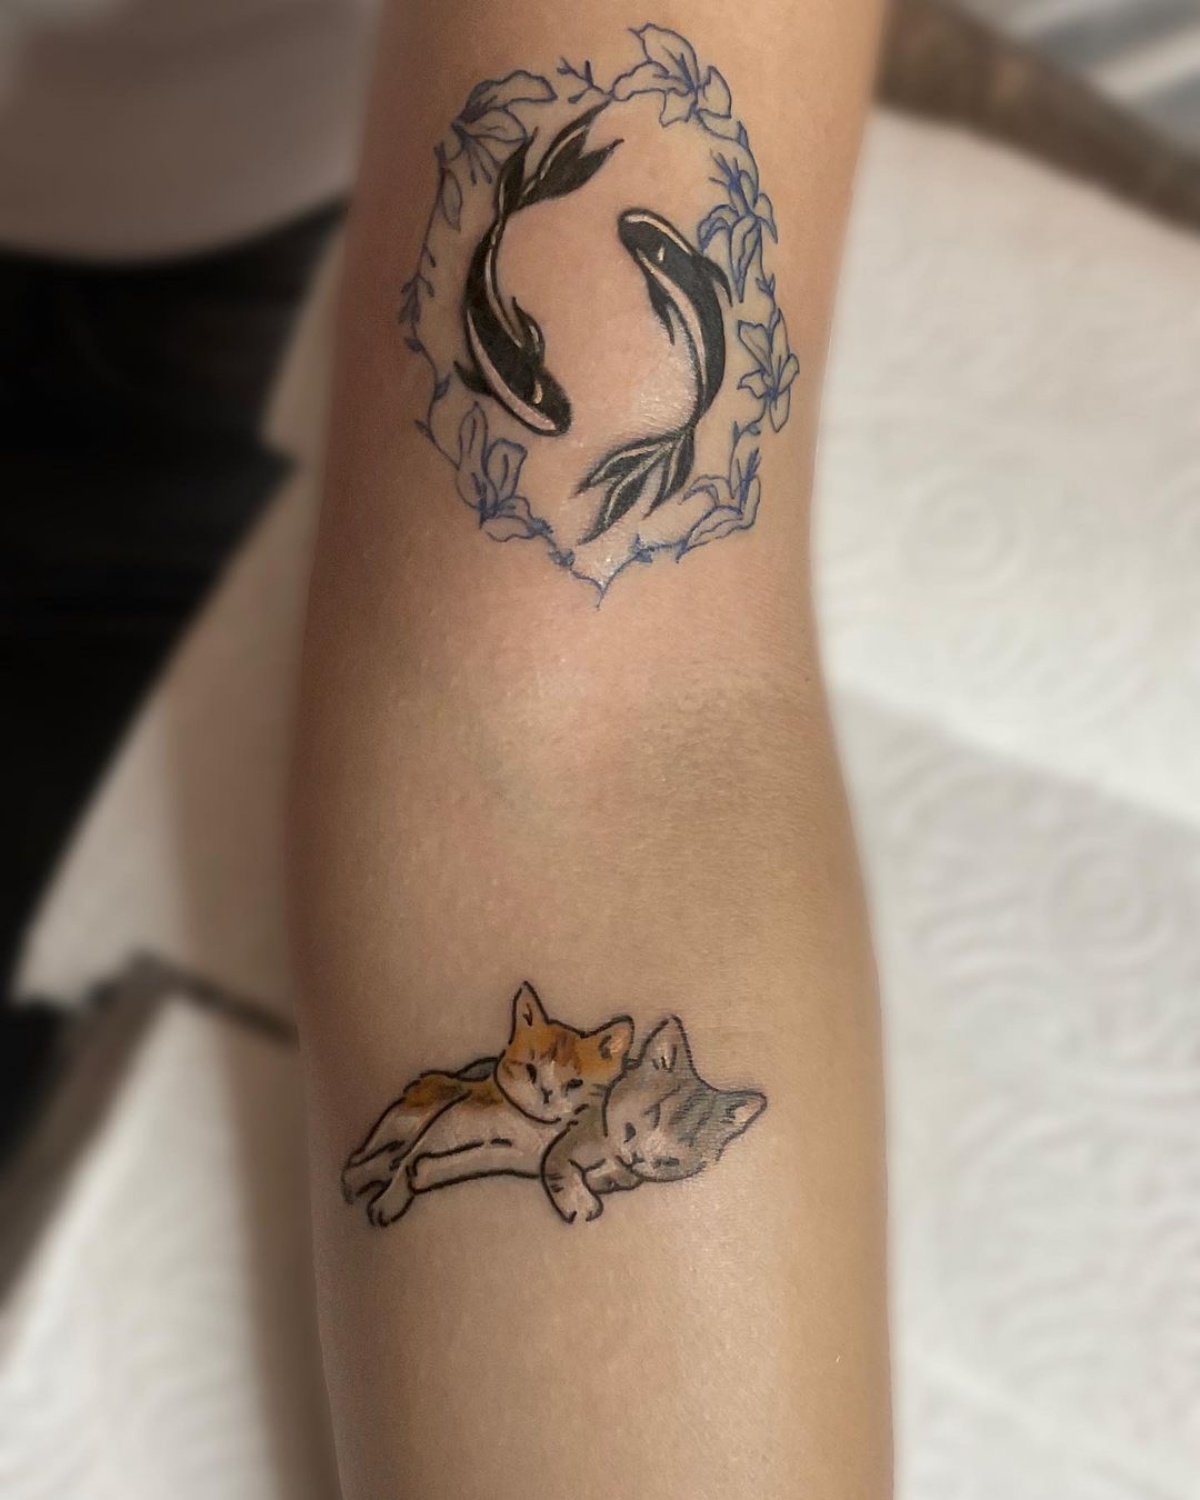 tattoo avambraccio donna disegno di gattini